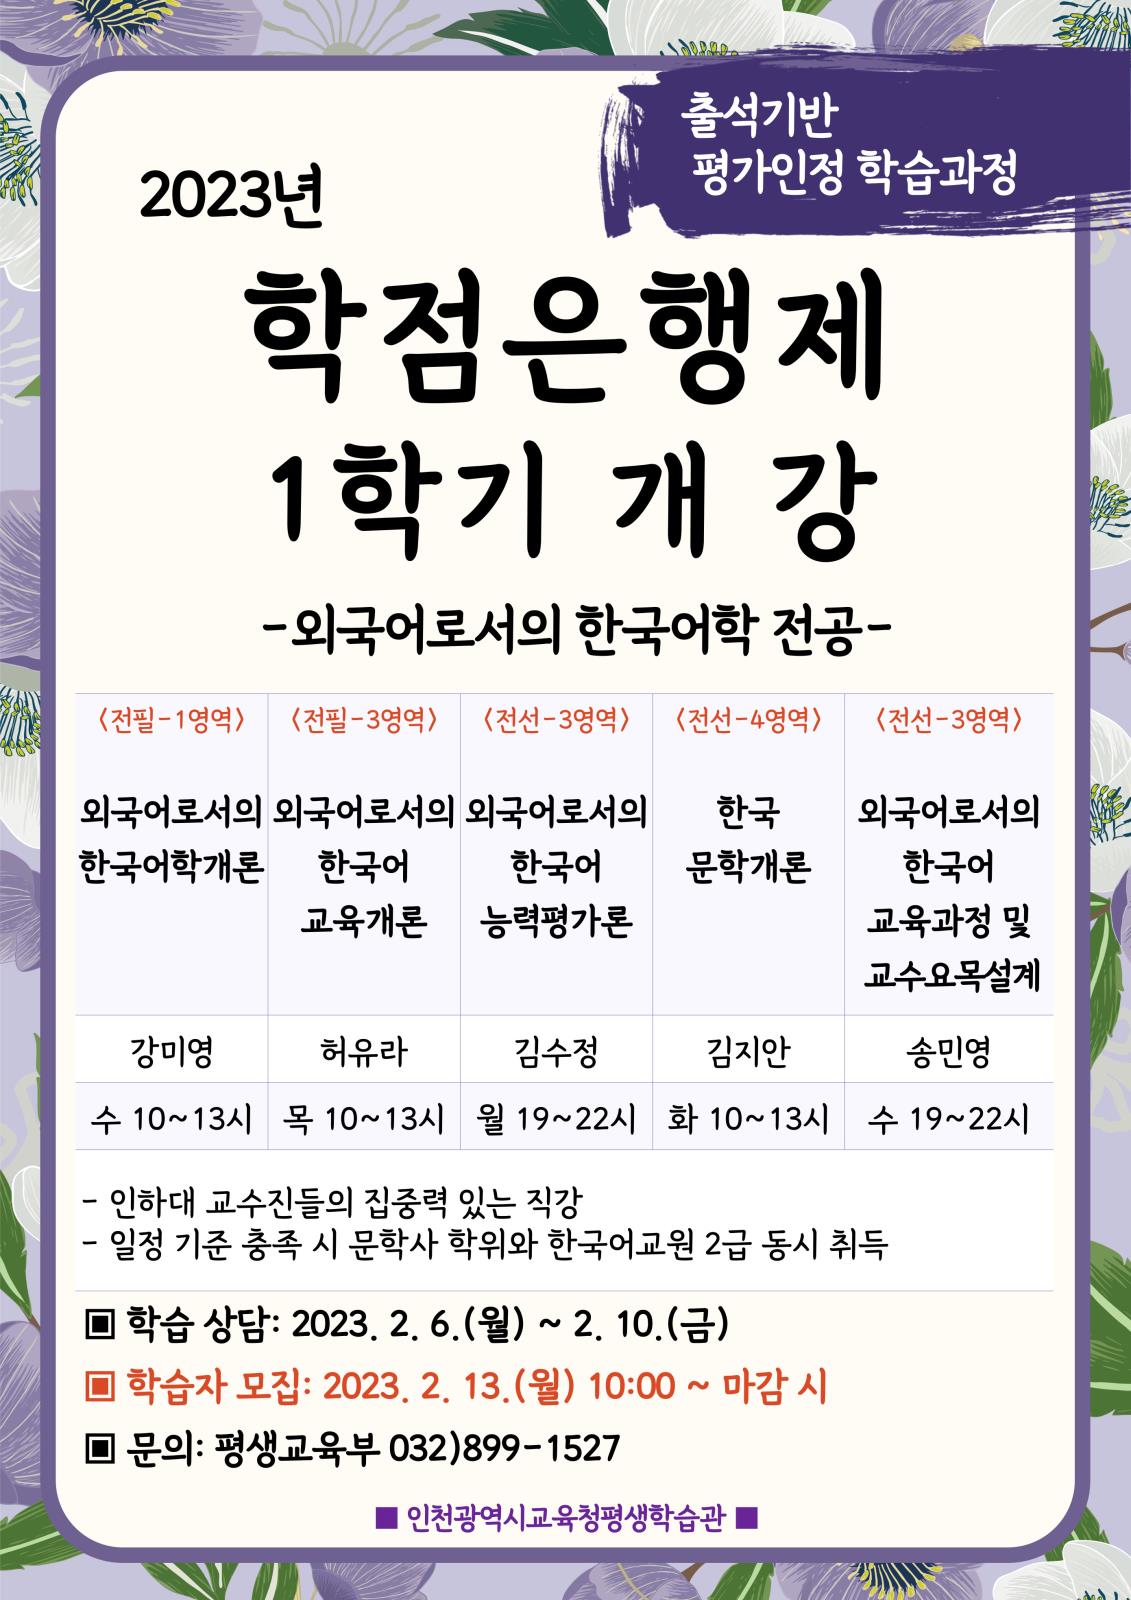 인천광역시교육청평생학습관, 2023년 1학기 학점은행제 학습자 모집의 1번째 이미지